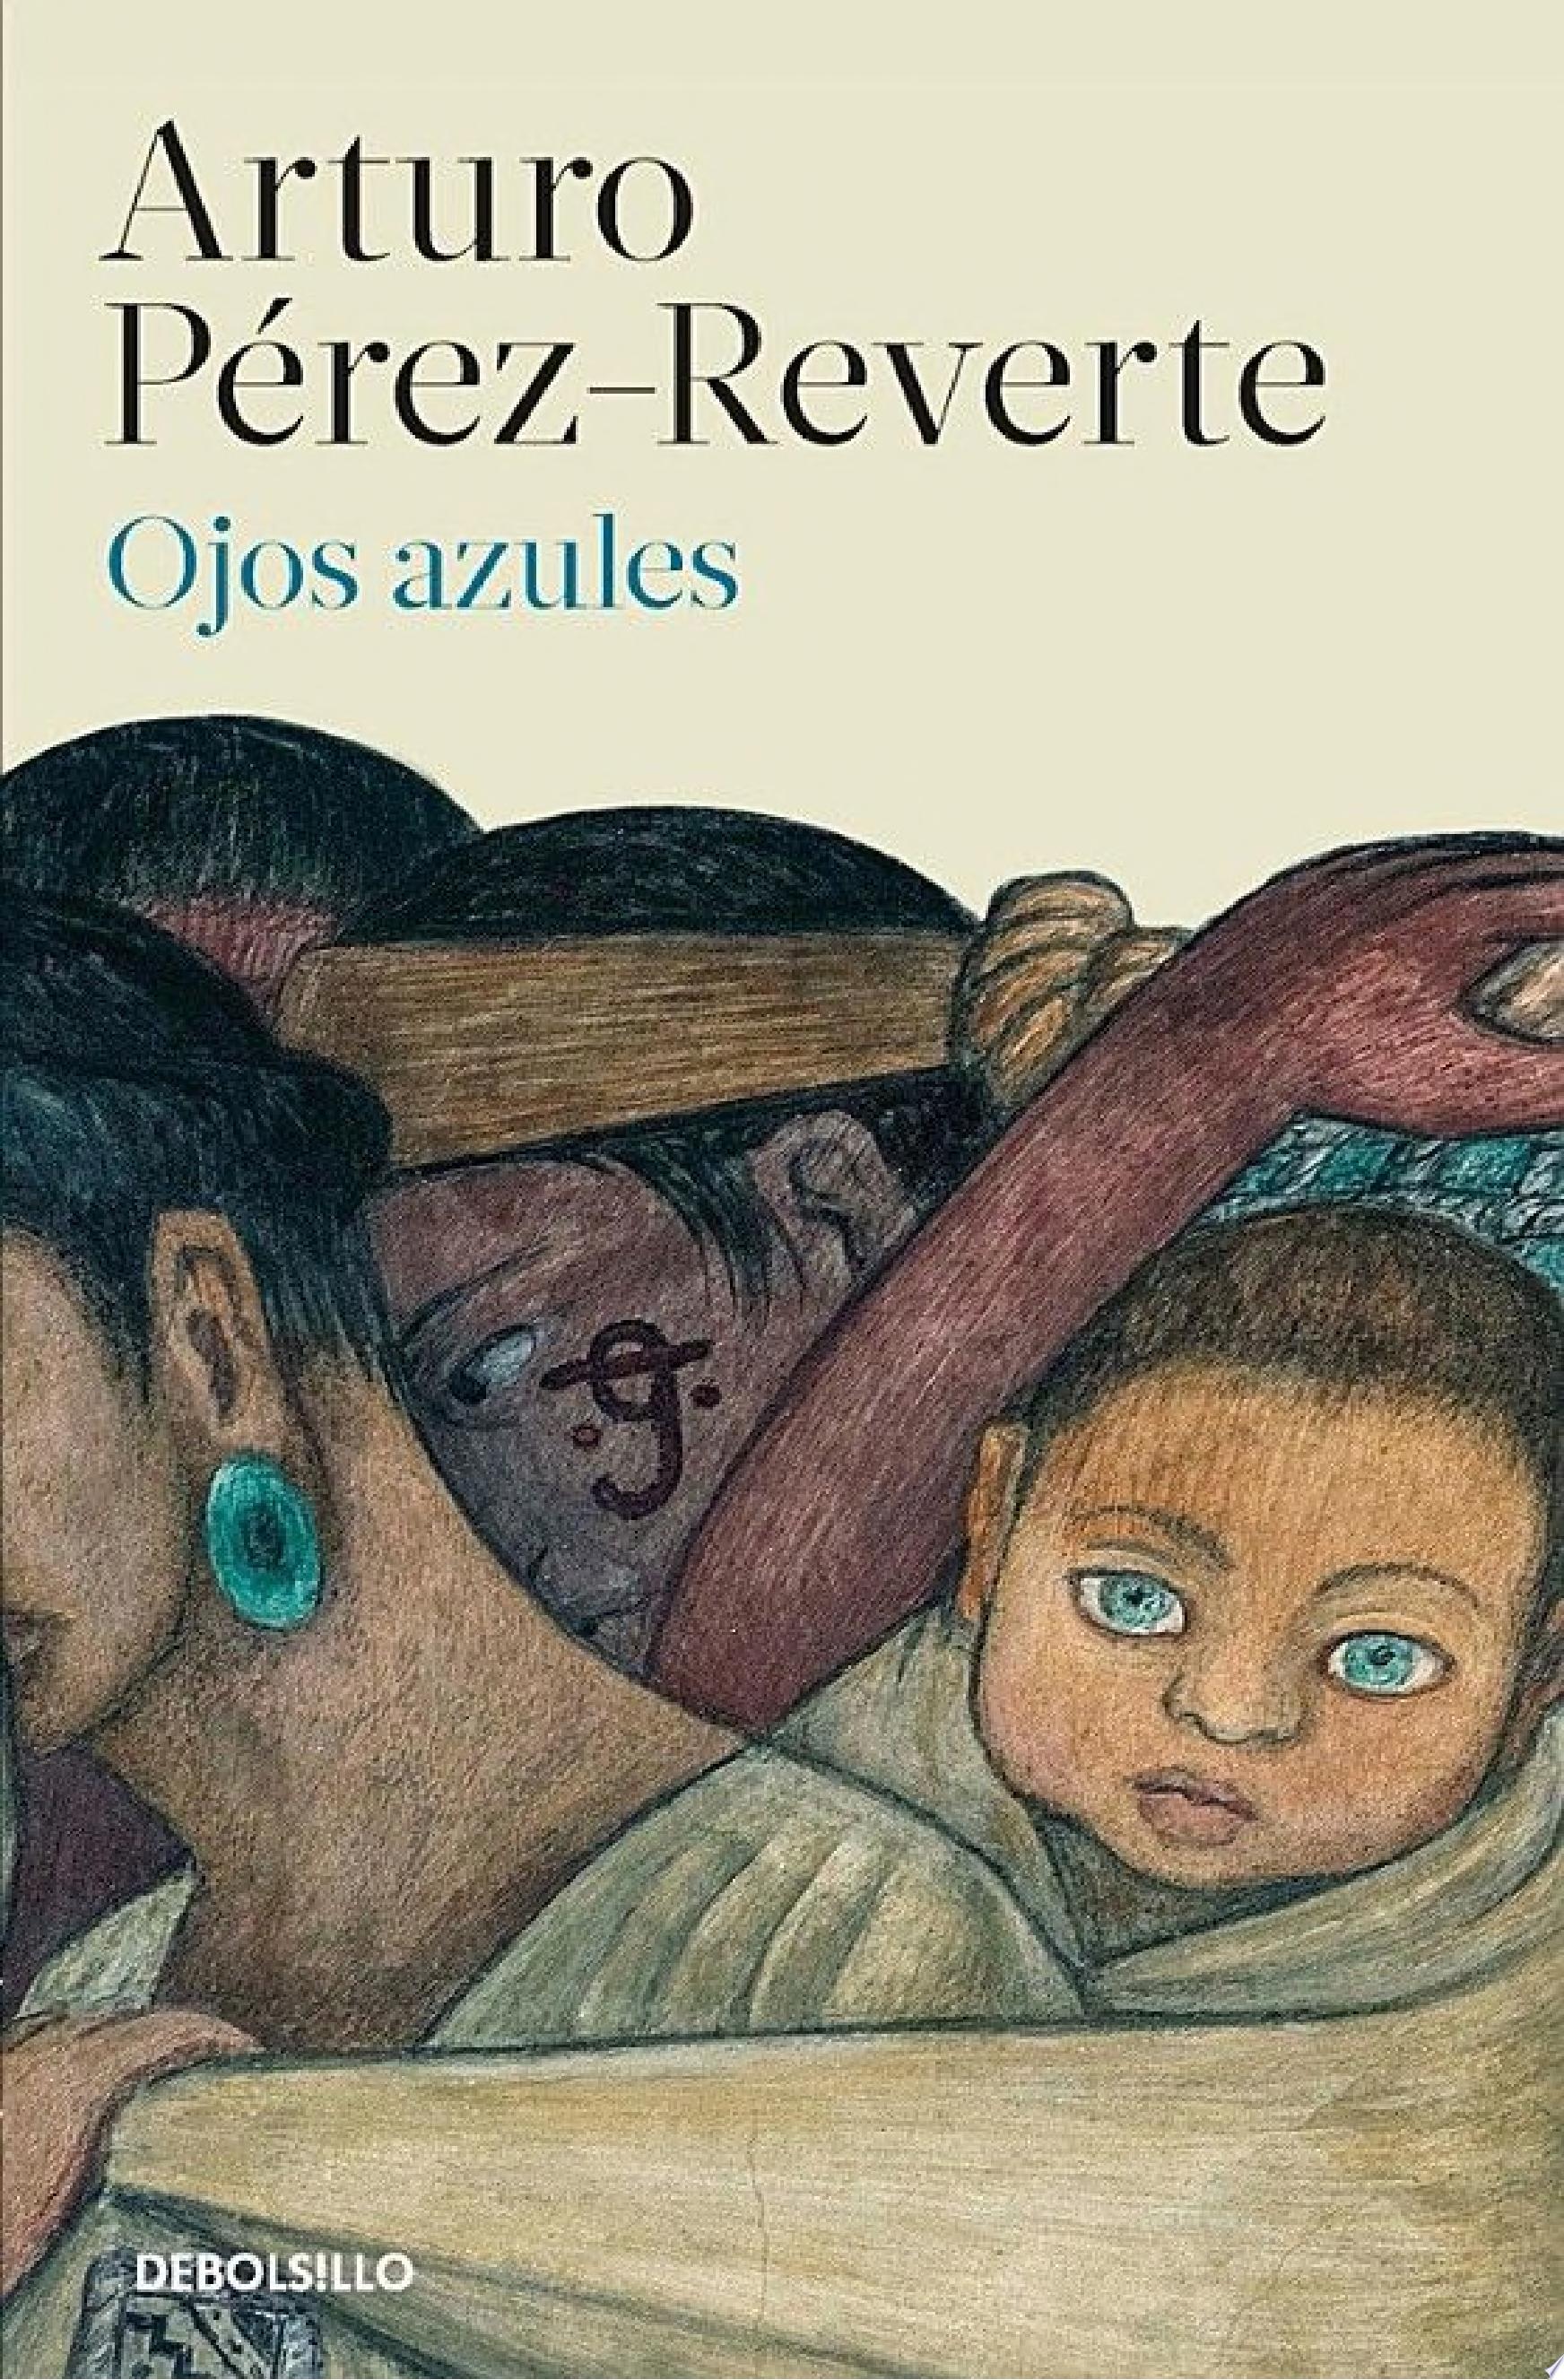 Image for "Ojos azules"